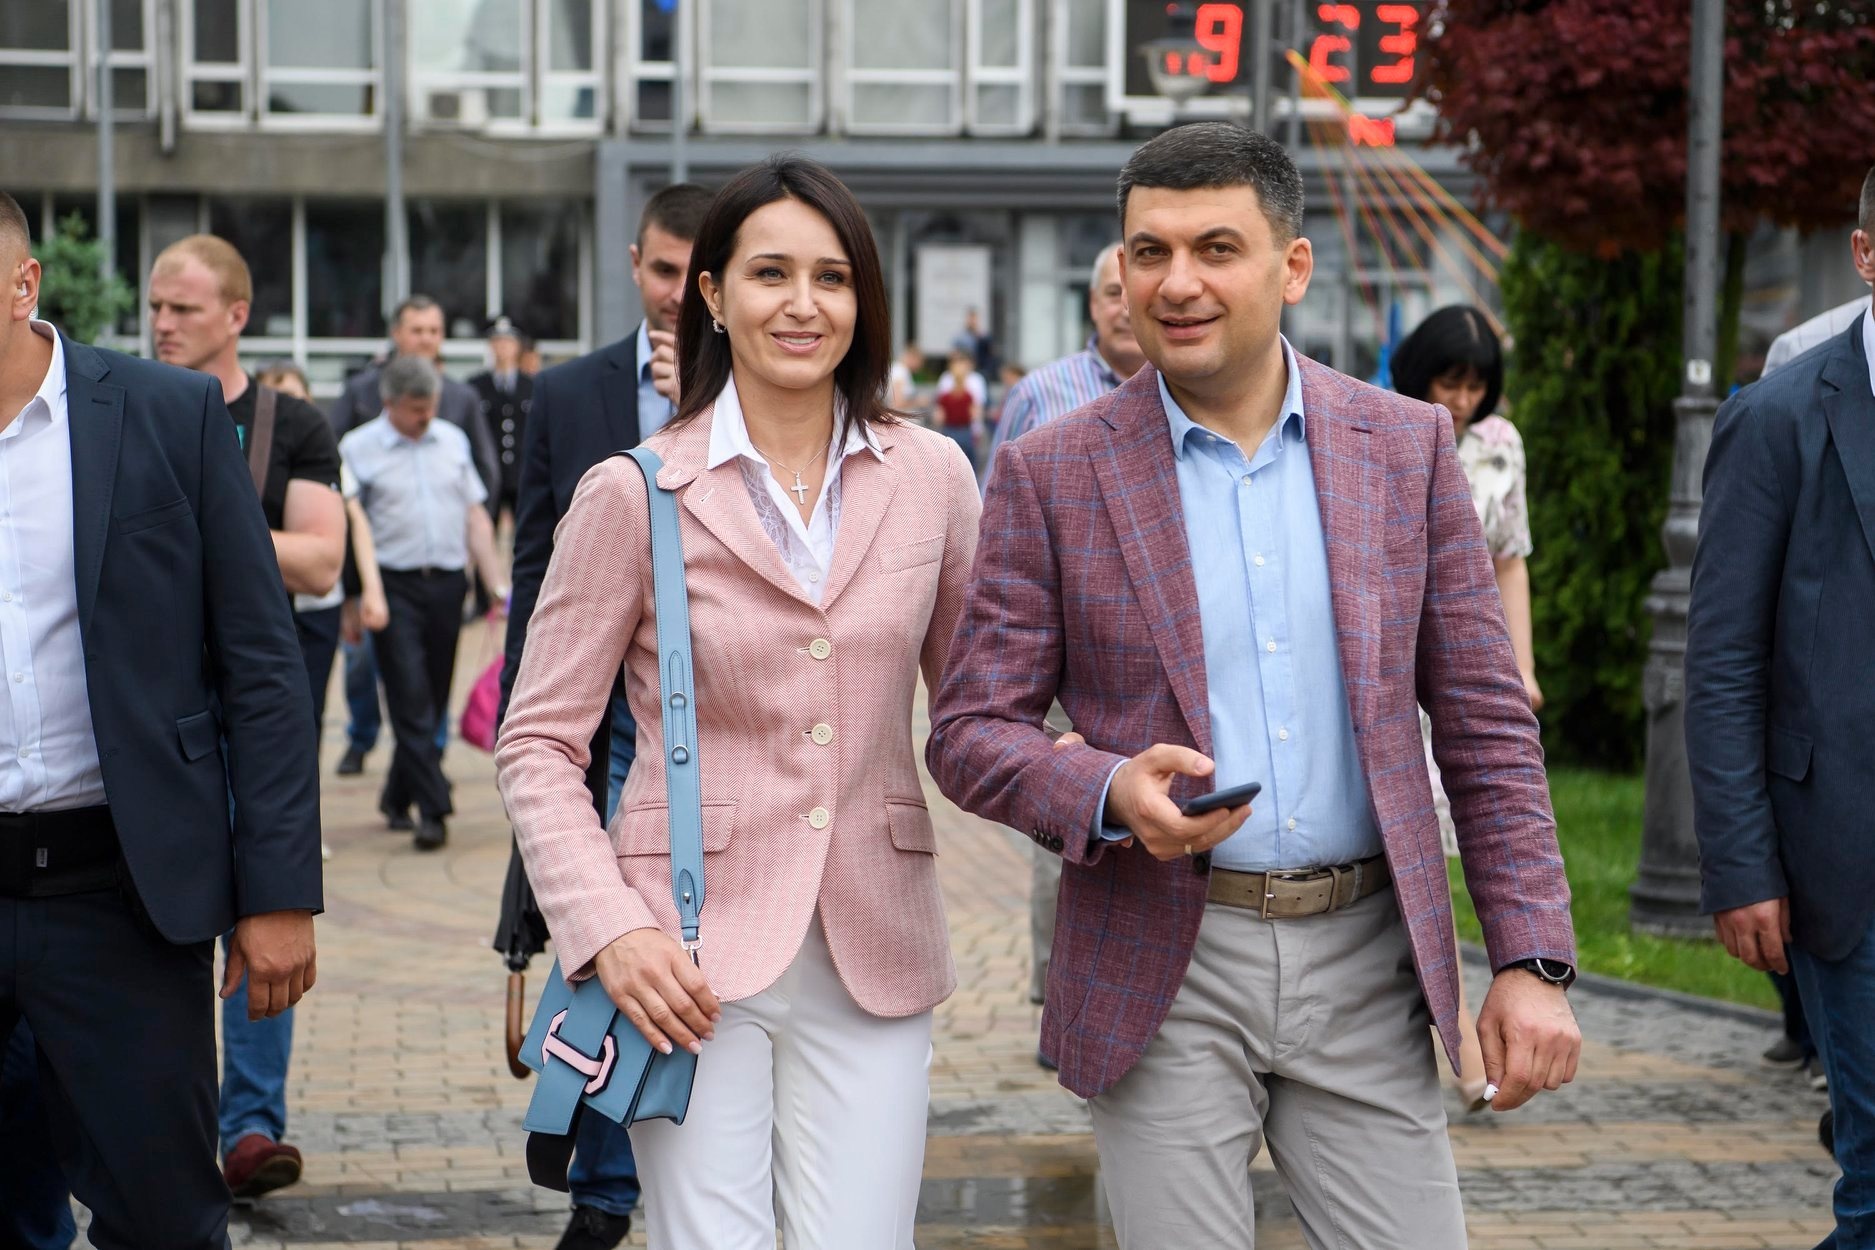 Гройсман із дружиною на Дні Європи у Вінниці, 2020 й рік. Фото: Volodymyr Groysman / Facebook